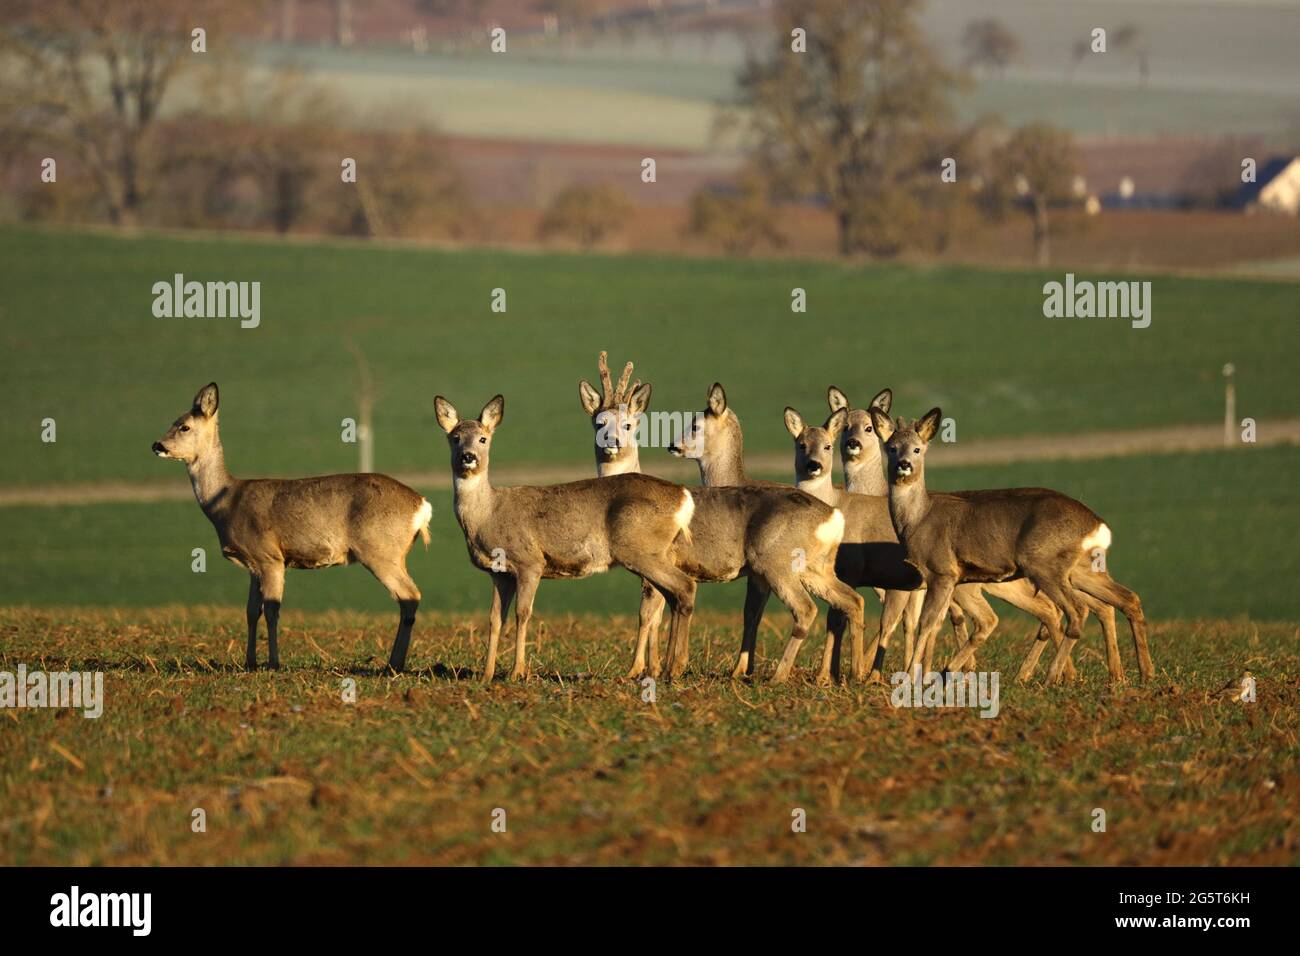 roe deer (Capreolus capreolus), group of roe deers in a field, Germany, Baden-Wuerttemberg Stock Photo